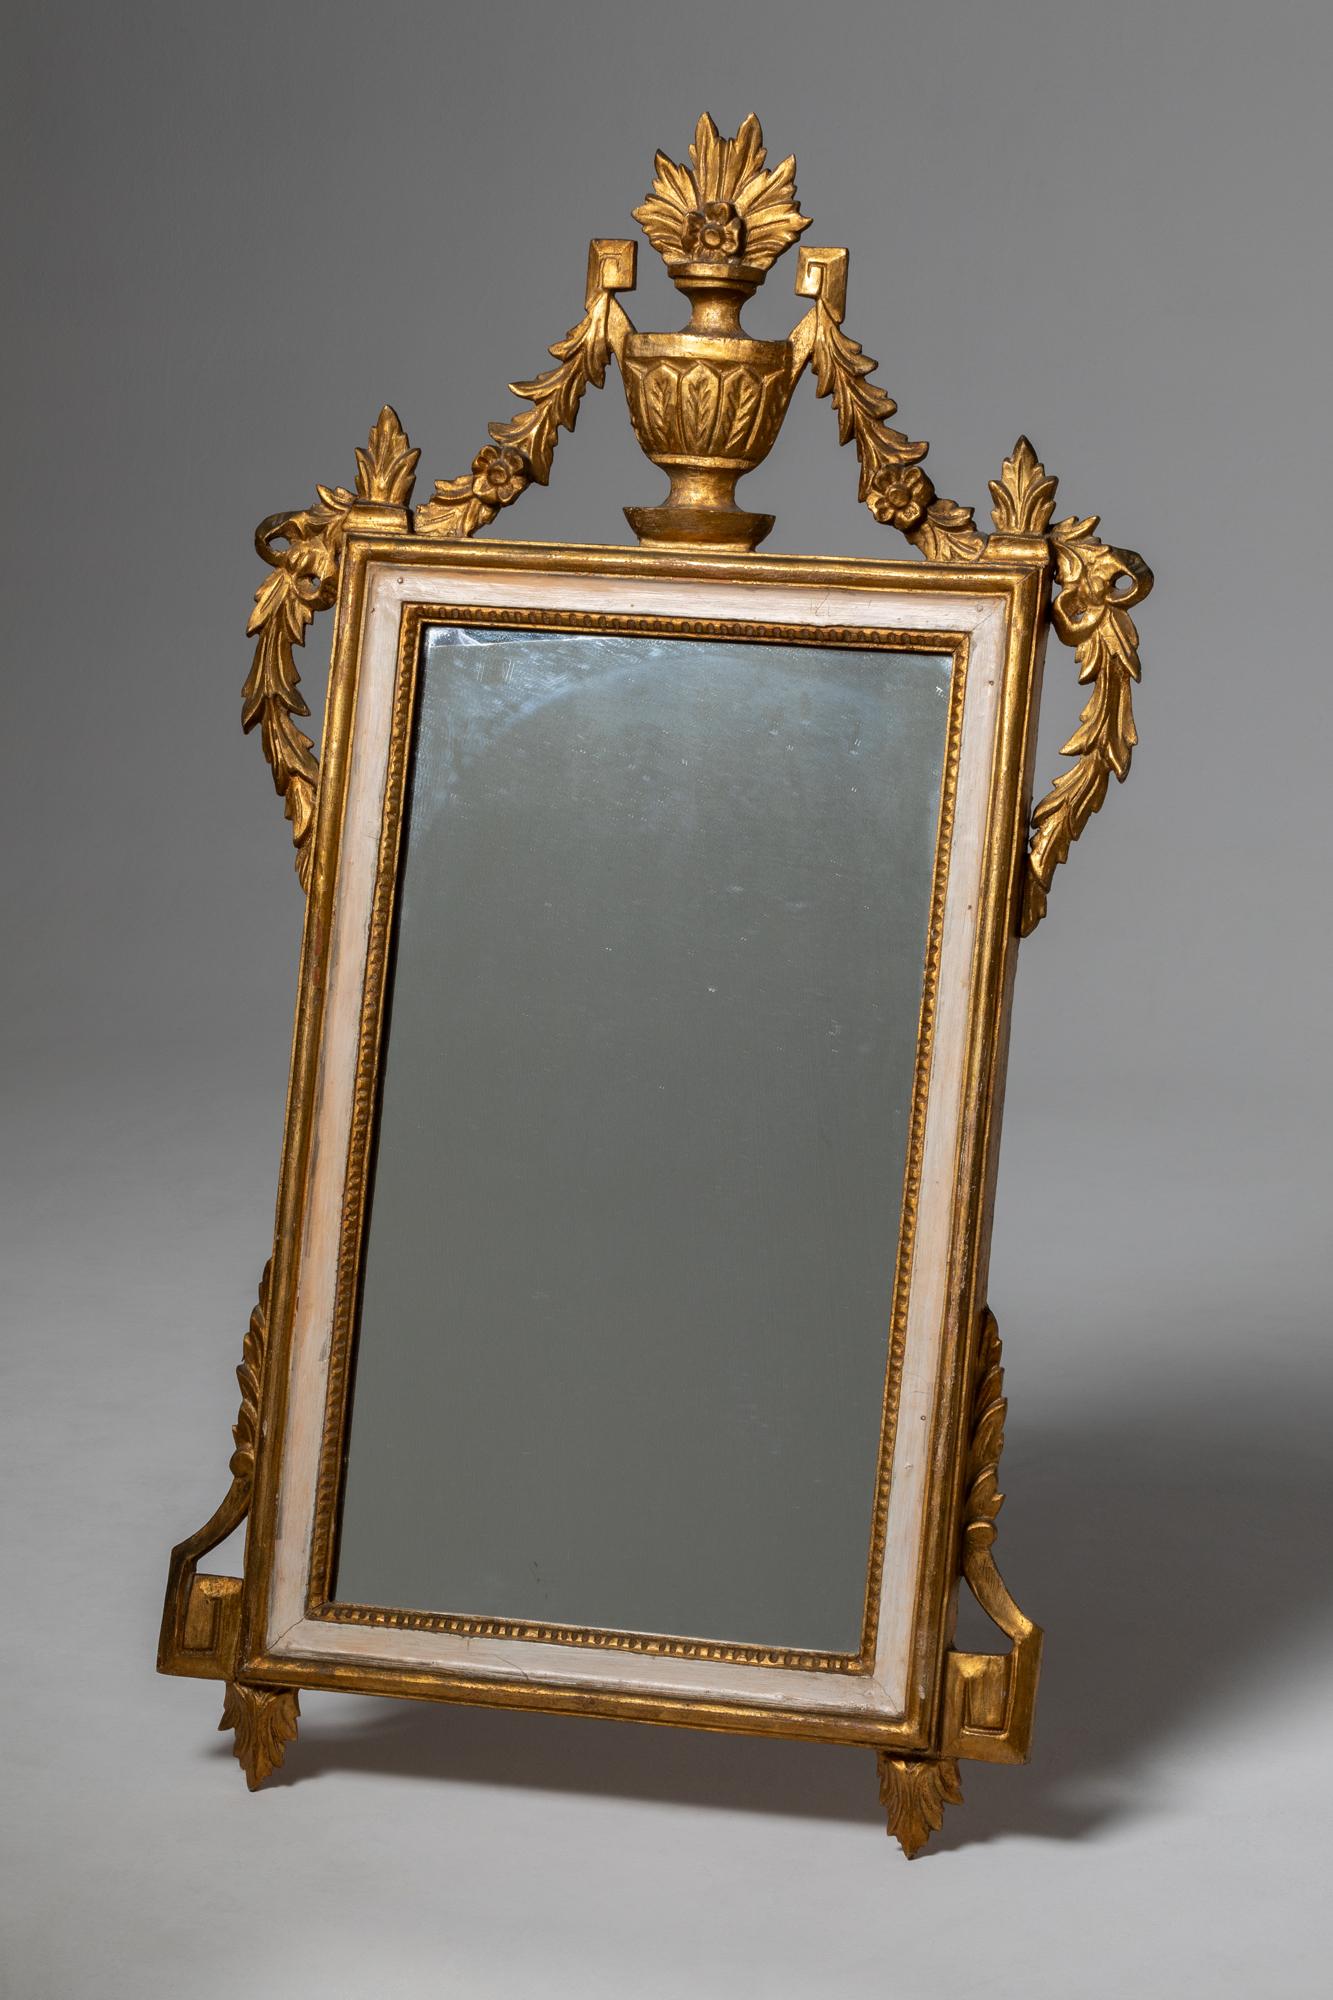 Un bel exemple des miroirs de l'époque de Louis XVI

Le style Louis XVI désigne un mouvement de design et d'art apparu en France à la fin du XVIIIe siècle, plus précisément sous le règne du roi Louis XVI (1774-1792). Cette période se caractérise par